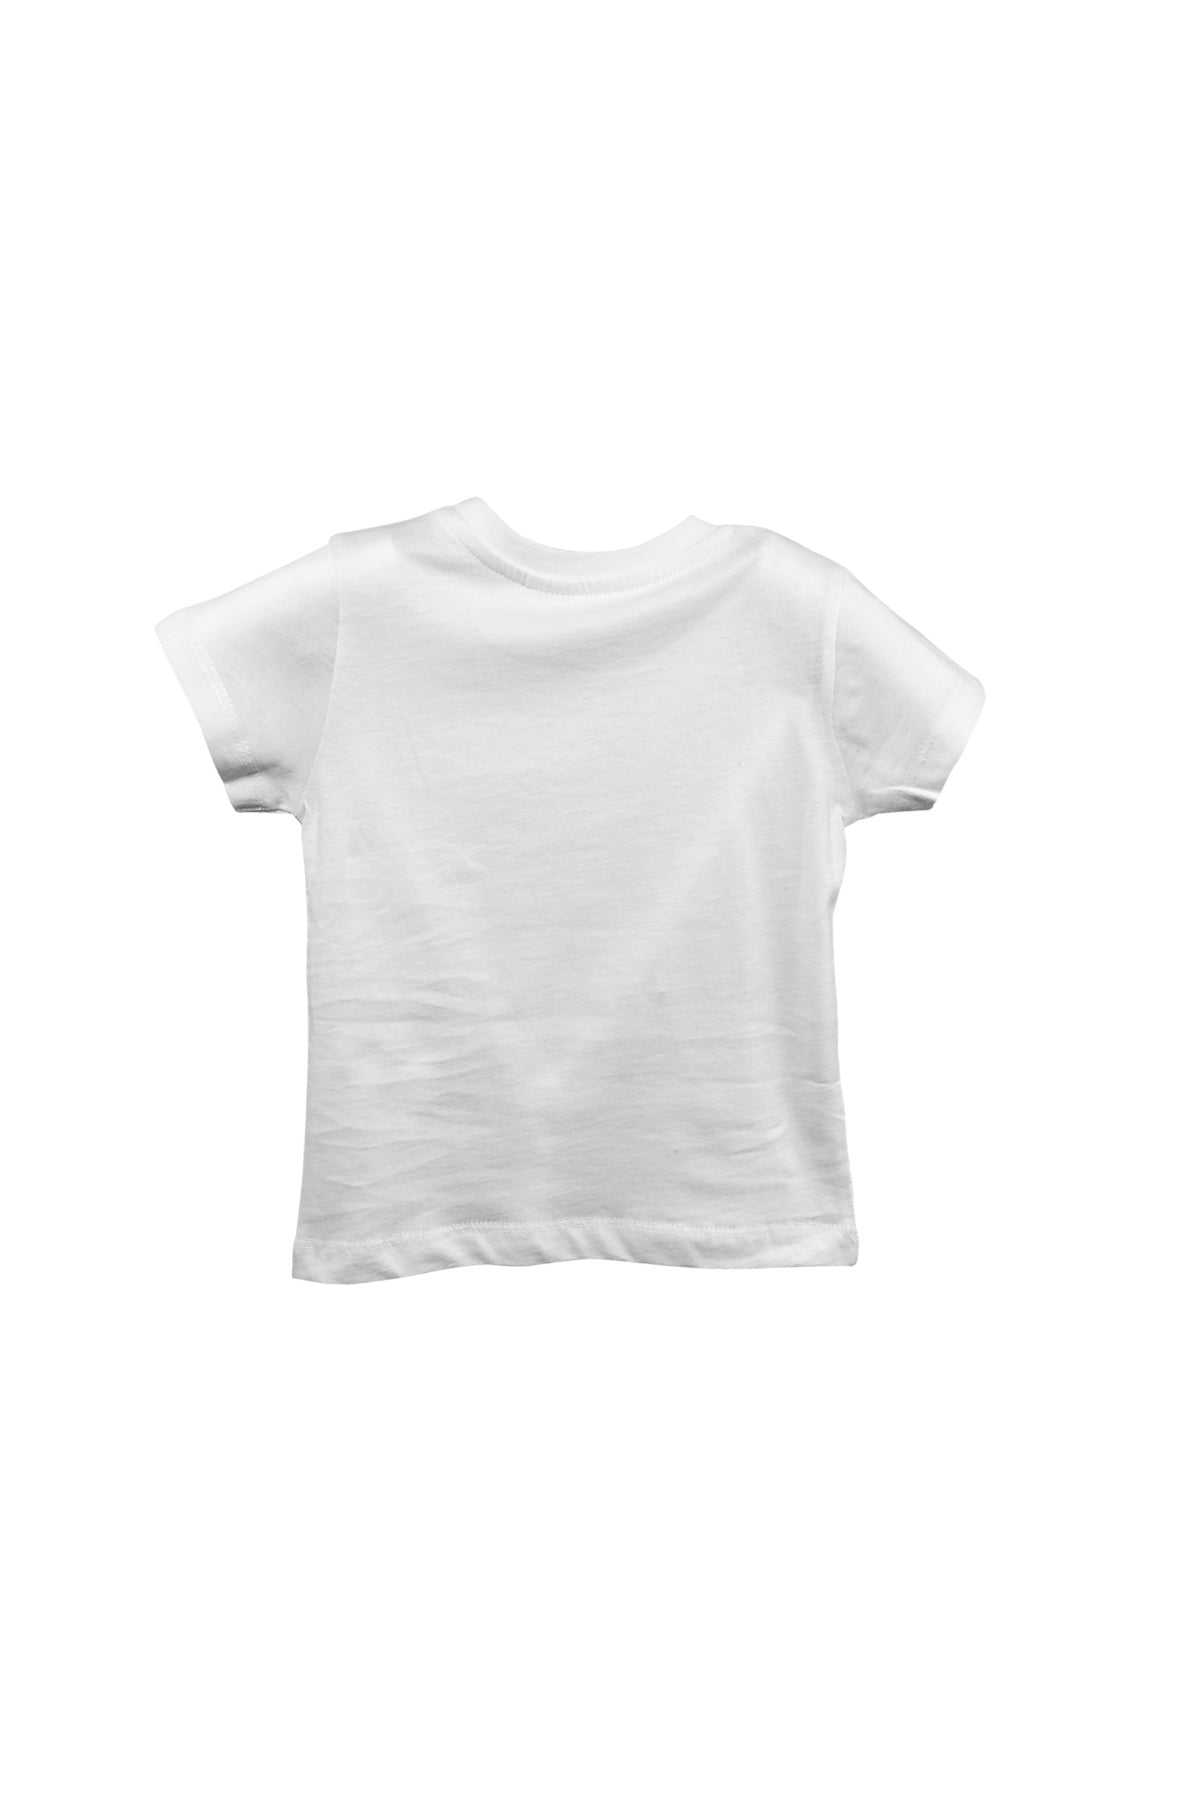 Erkek Bebek Yaka Çıtçıtlı Sarı Cepli Beyaz T-Shirt (9ay-4yaş)-4